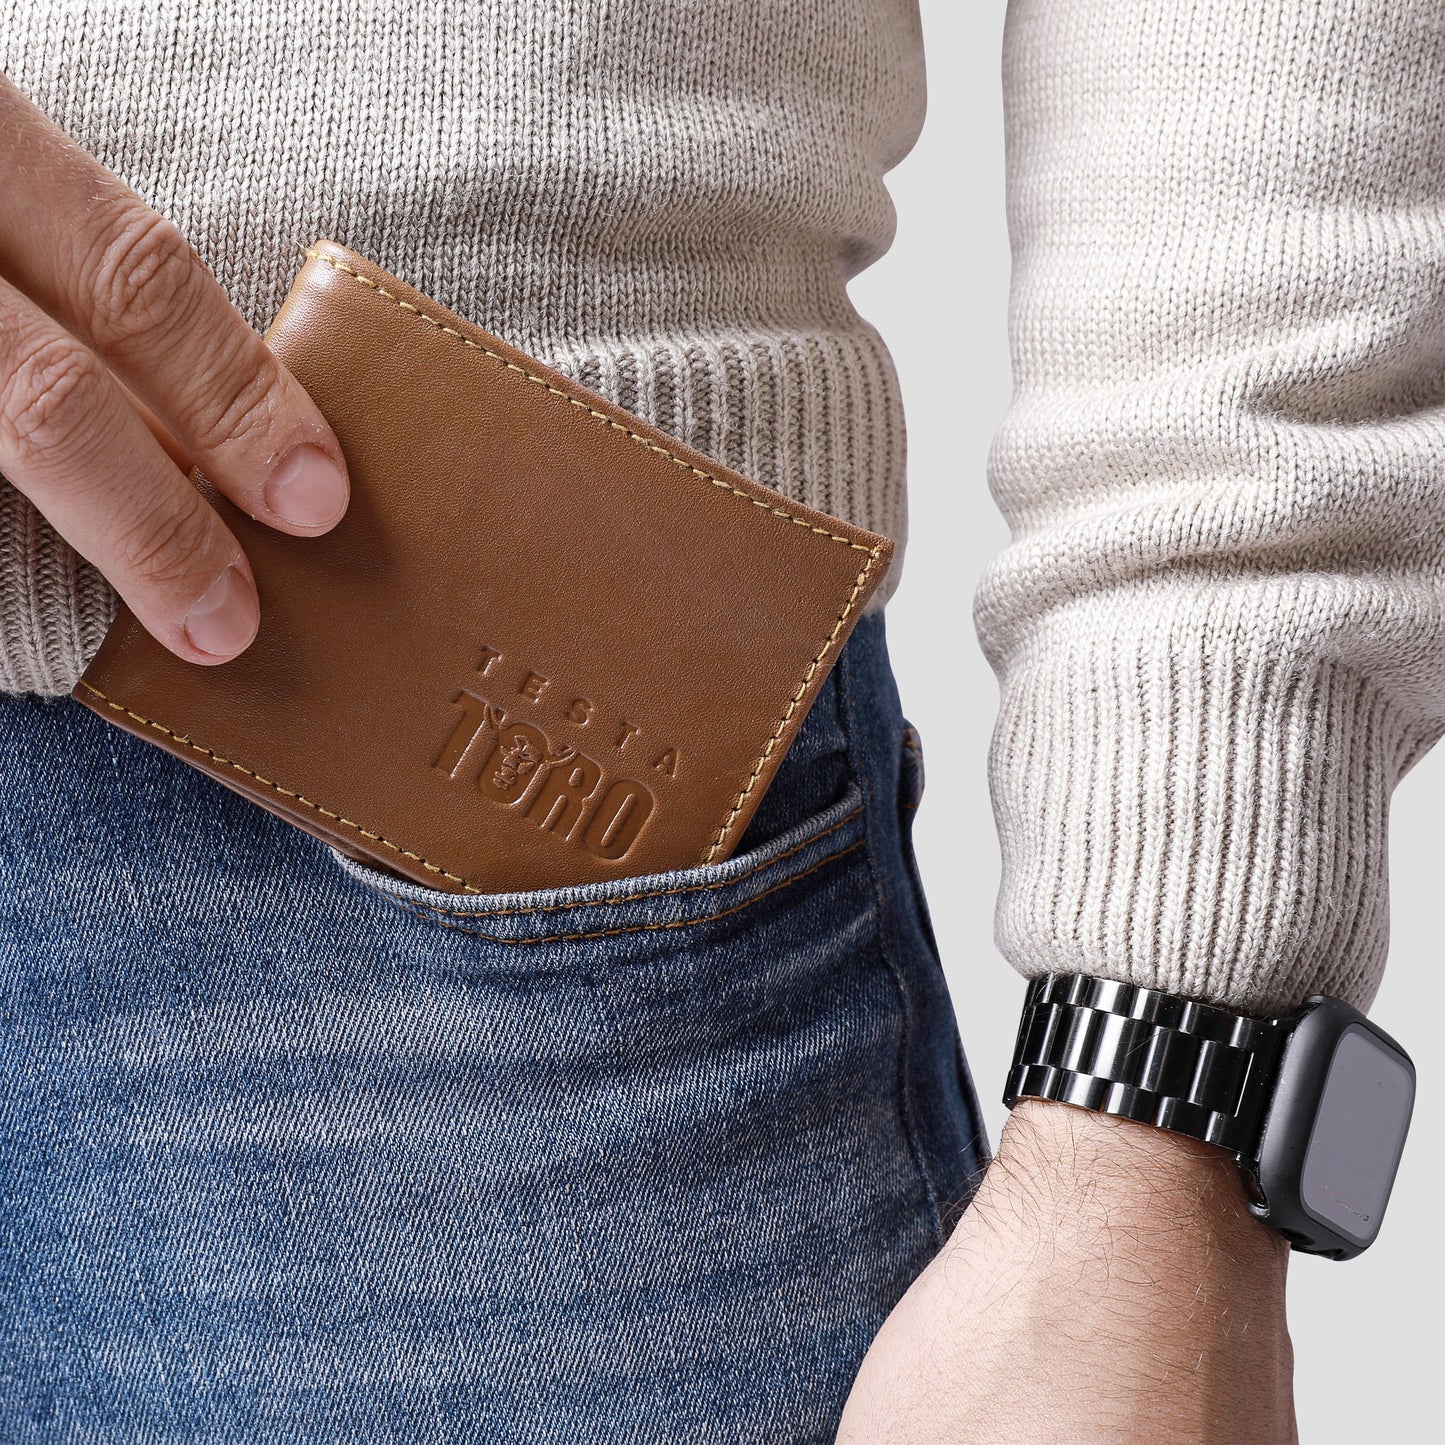 محفظة الاحتياجات كلها صناعة يدوية بأكتر من 13 جيب W8